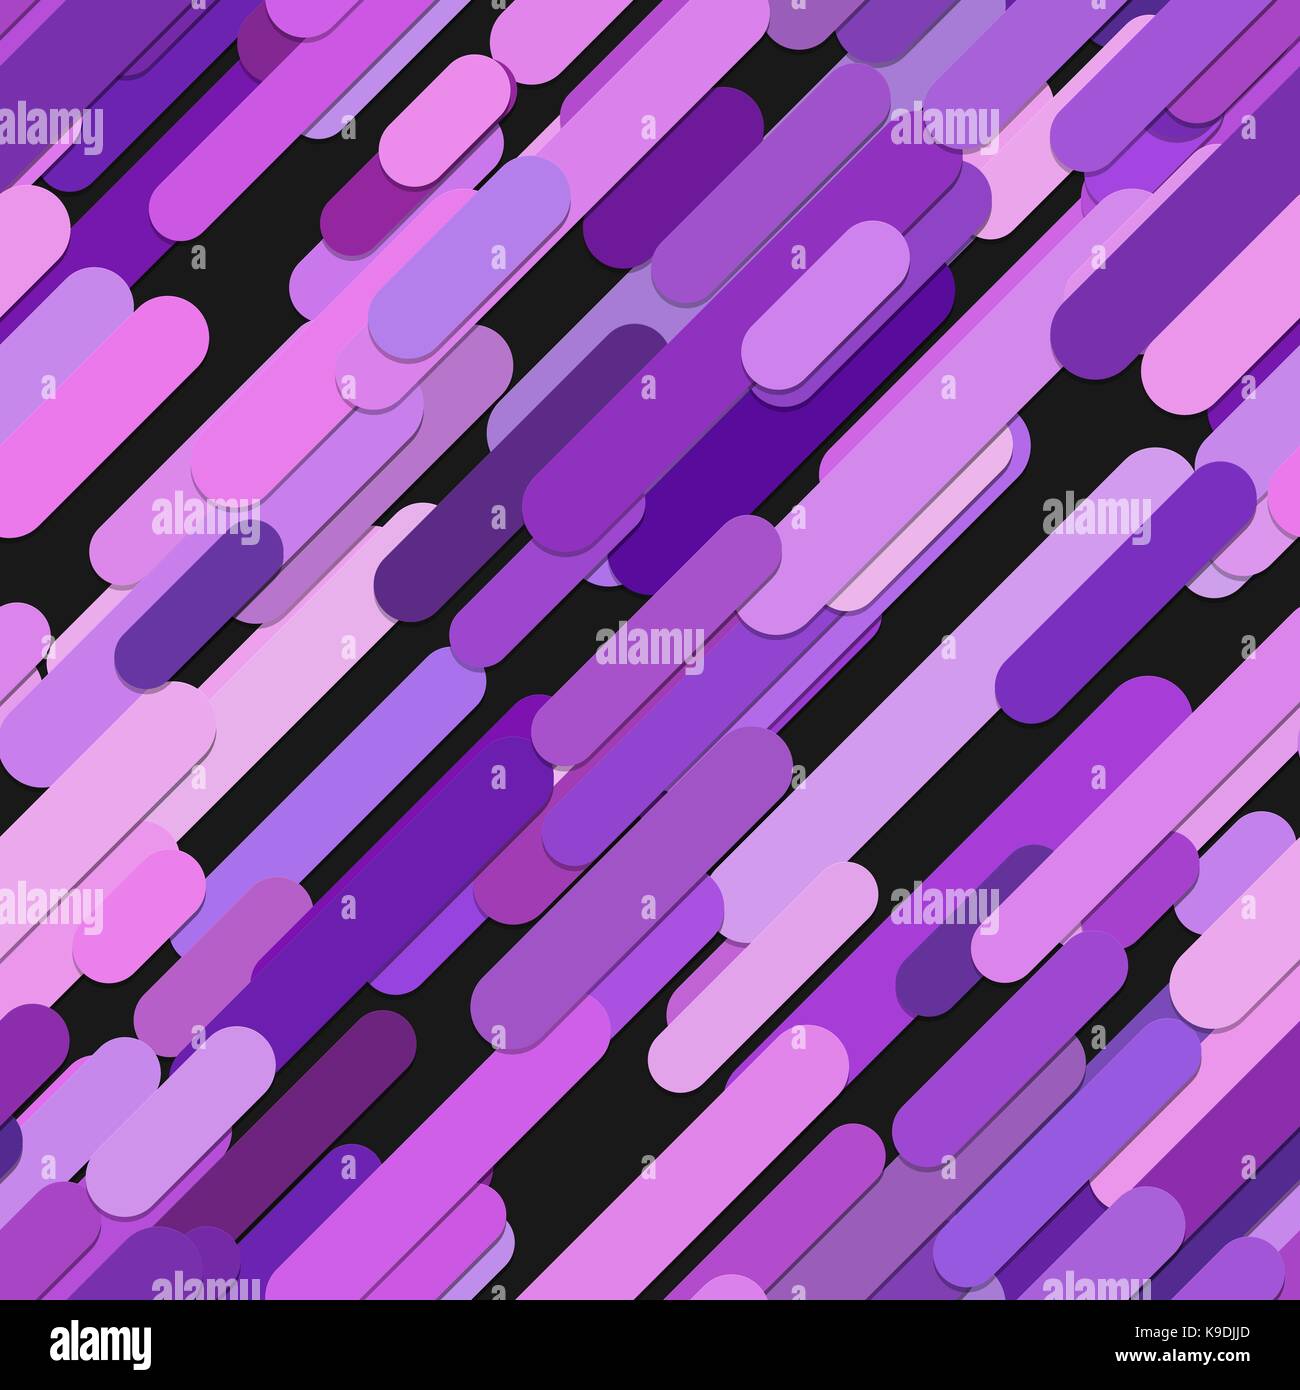 Nahtlose chaotischen abgerundete diagonale Streifen Muster Hintergrund - vektorgrafik von violette Linien auf schwarzem Hintergrund Stock Vektor